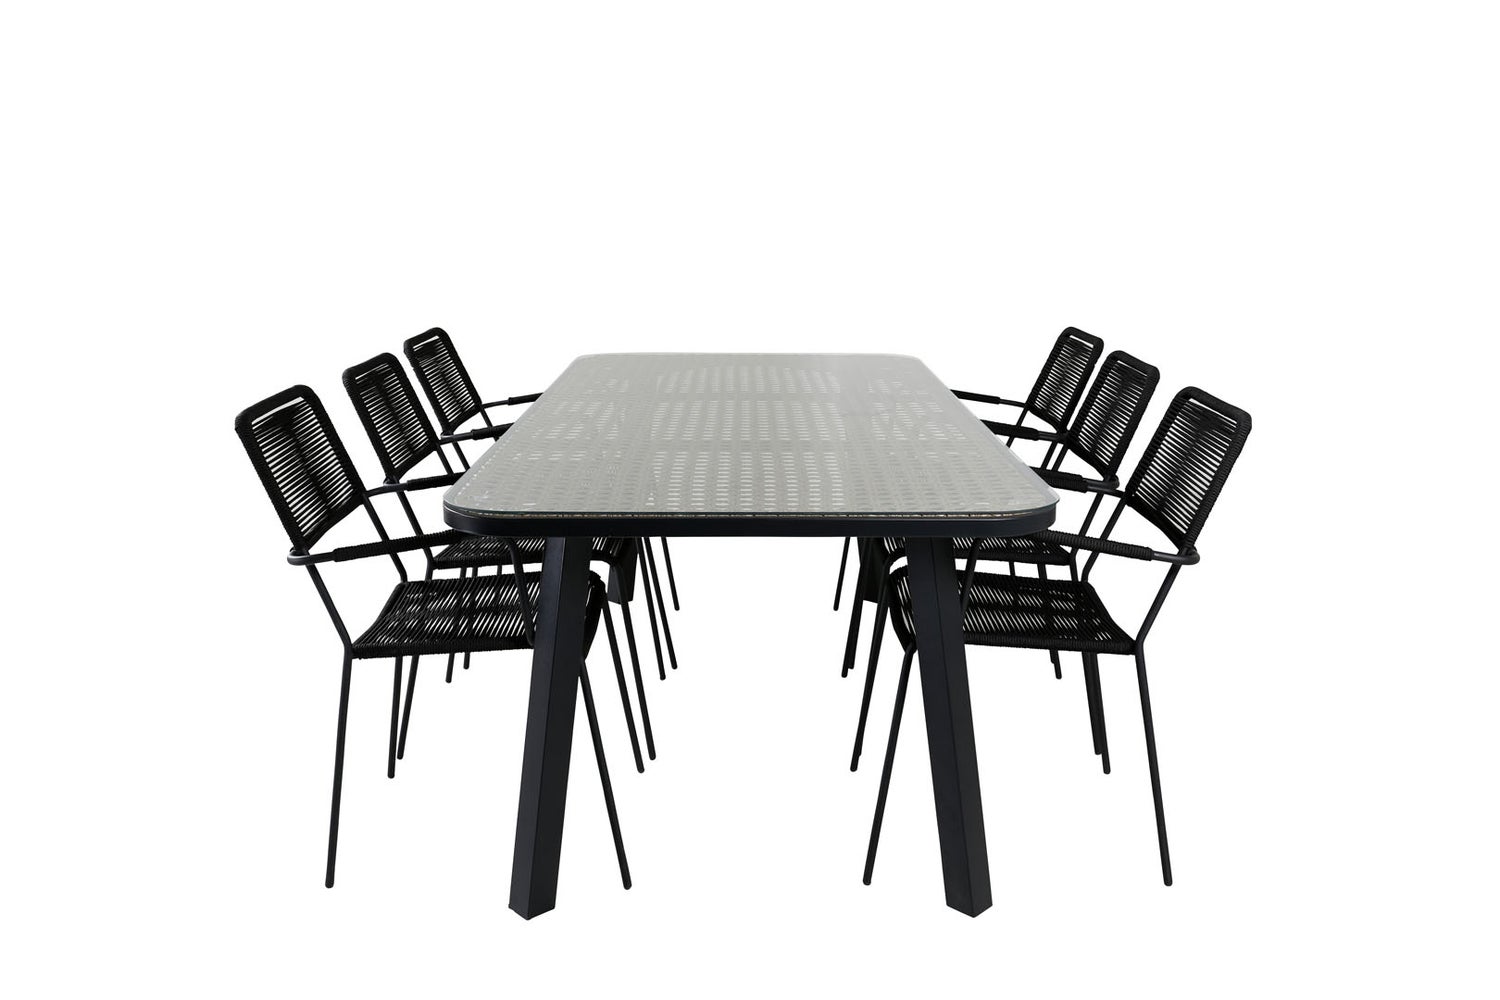 Paola Gartenset Tisch 100x200cm und 6 Stühle ArmlehneS Lindos schwarz, natur.